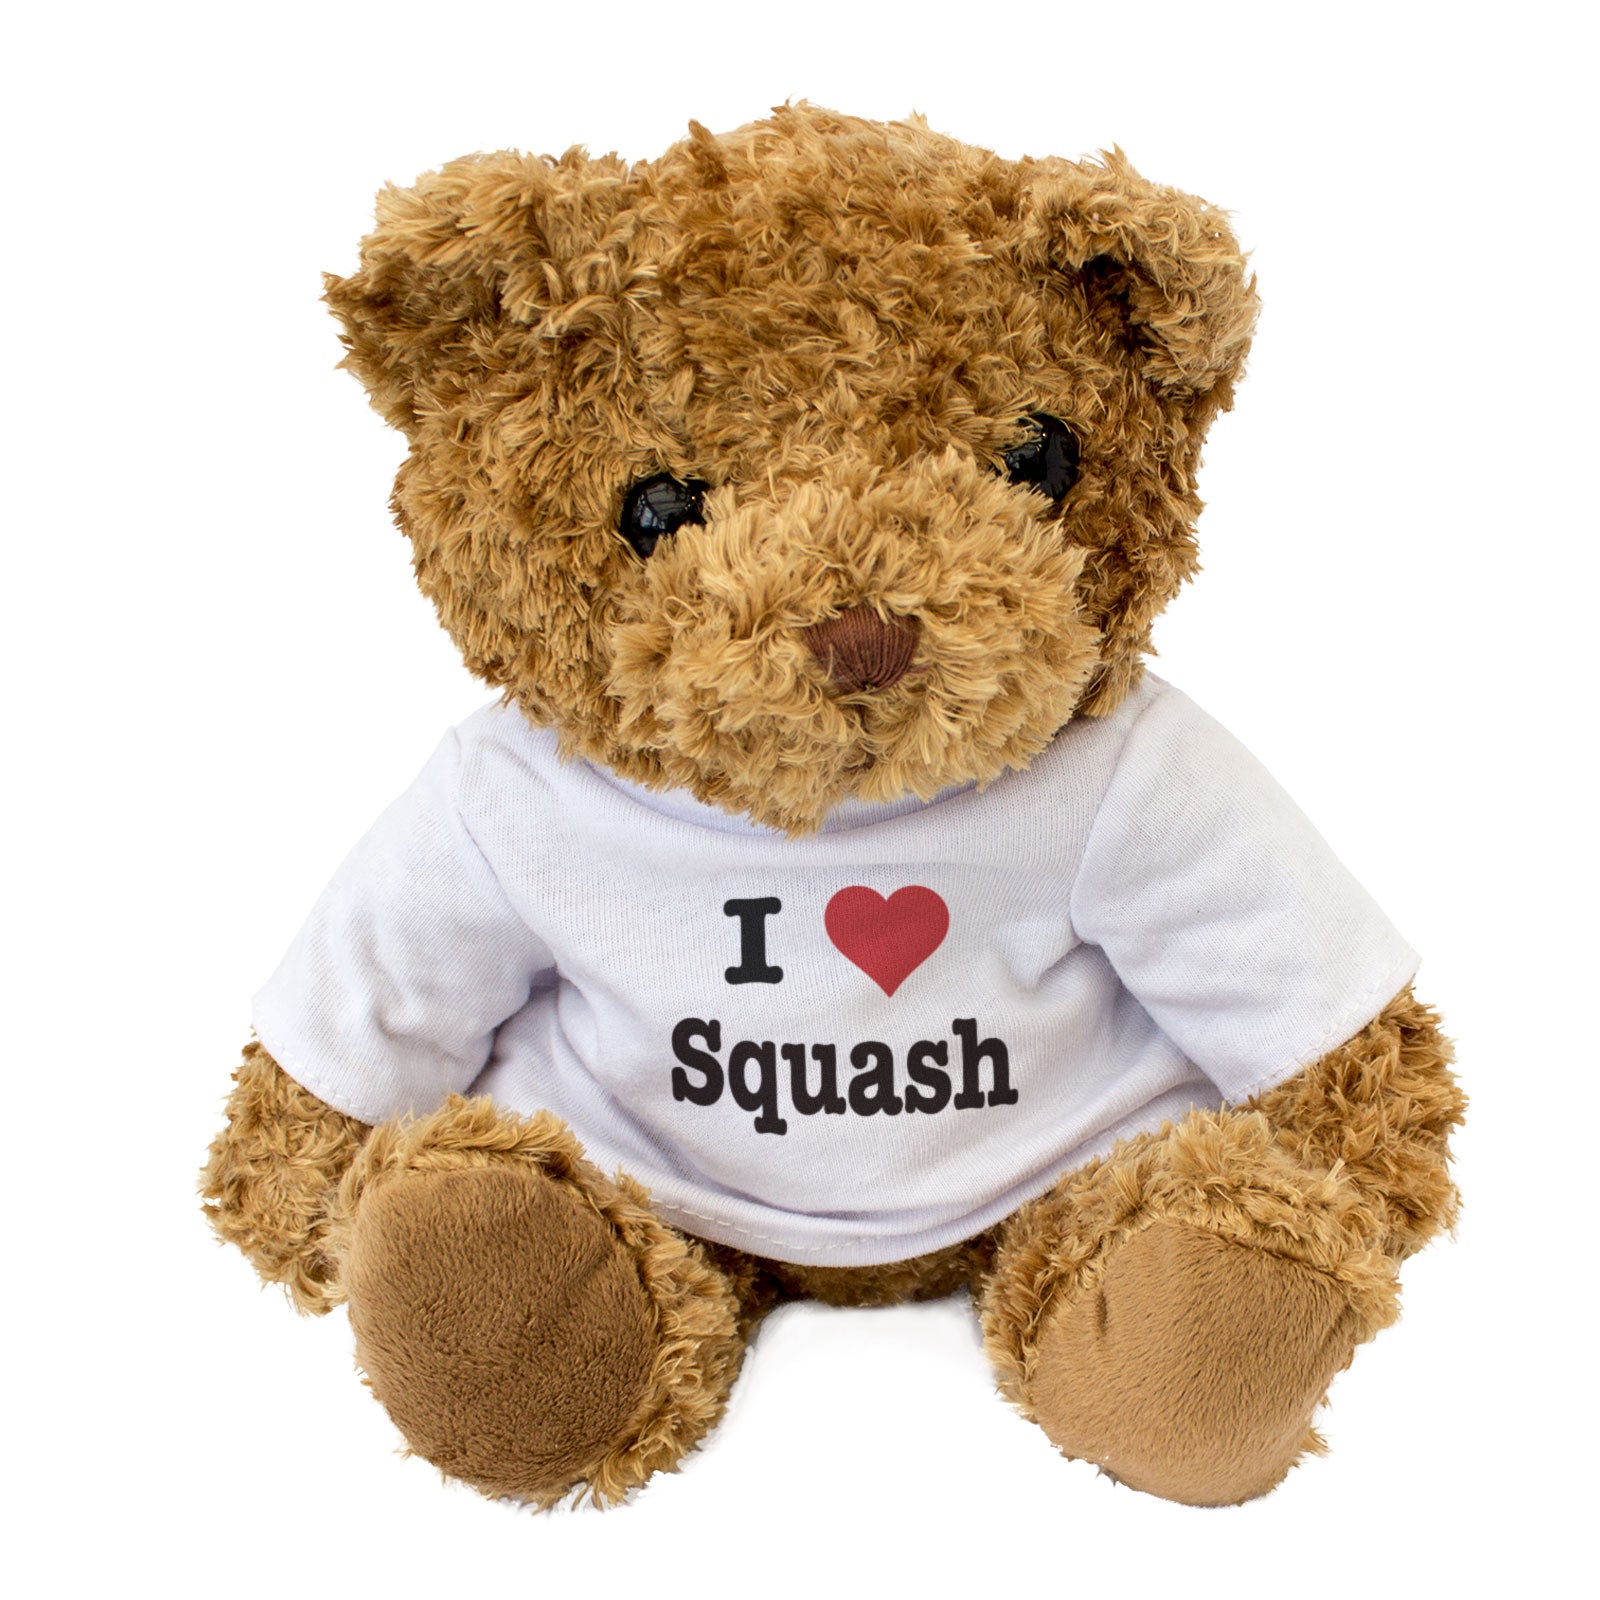 I Love Squash - Teddy Bear